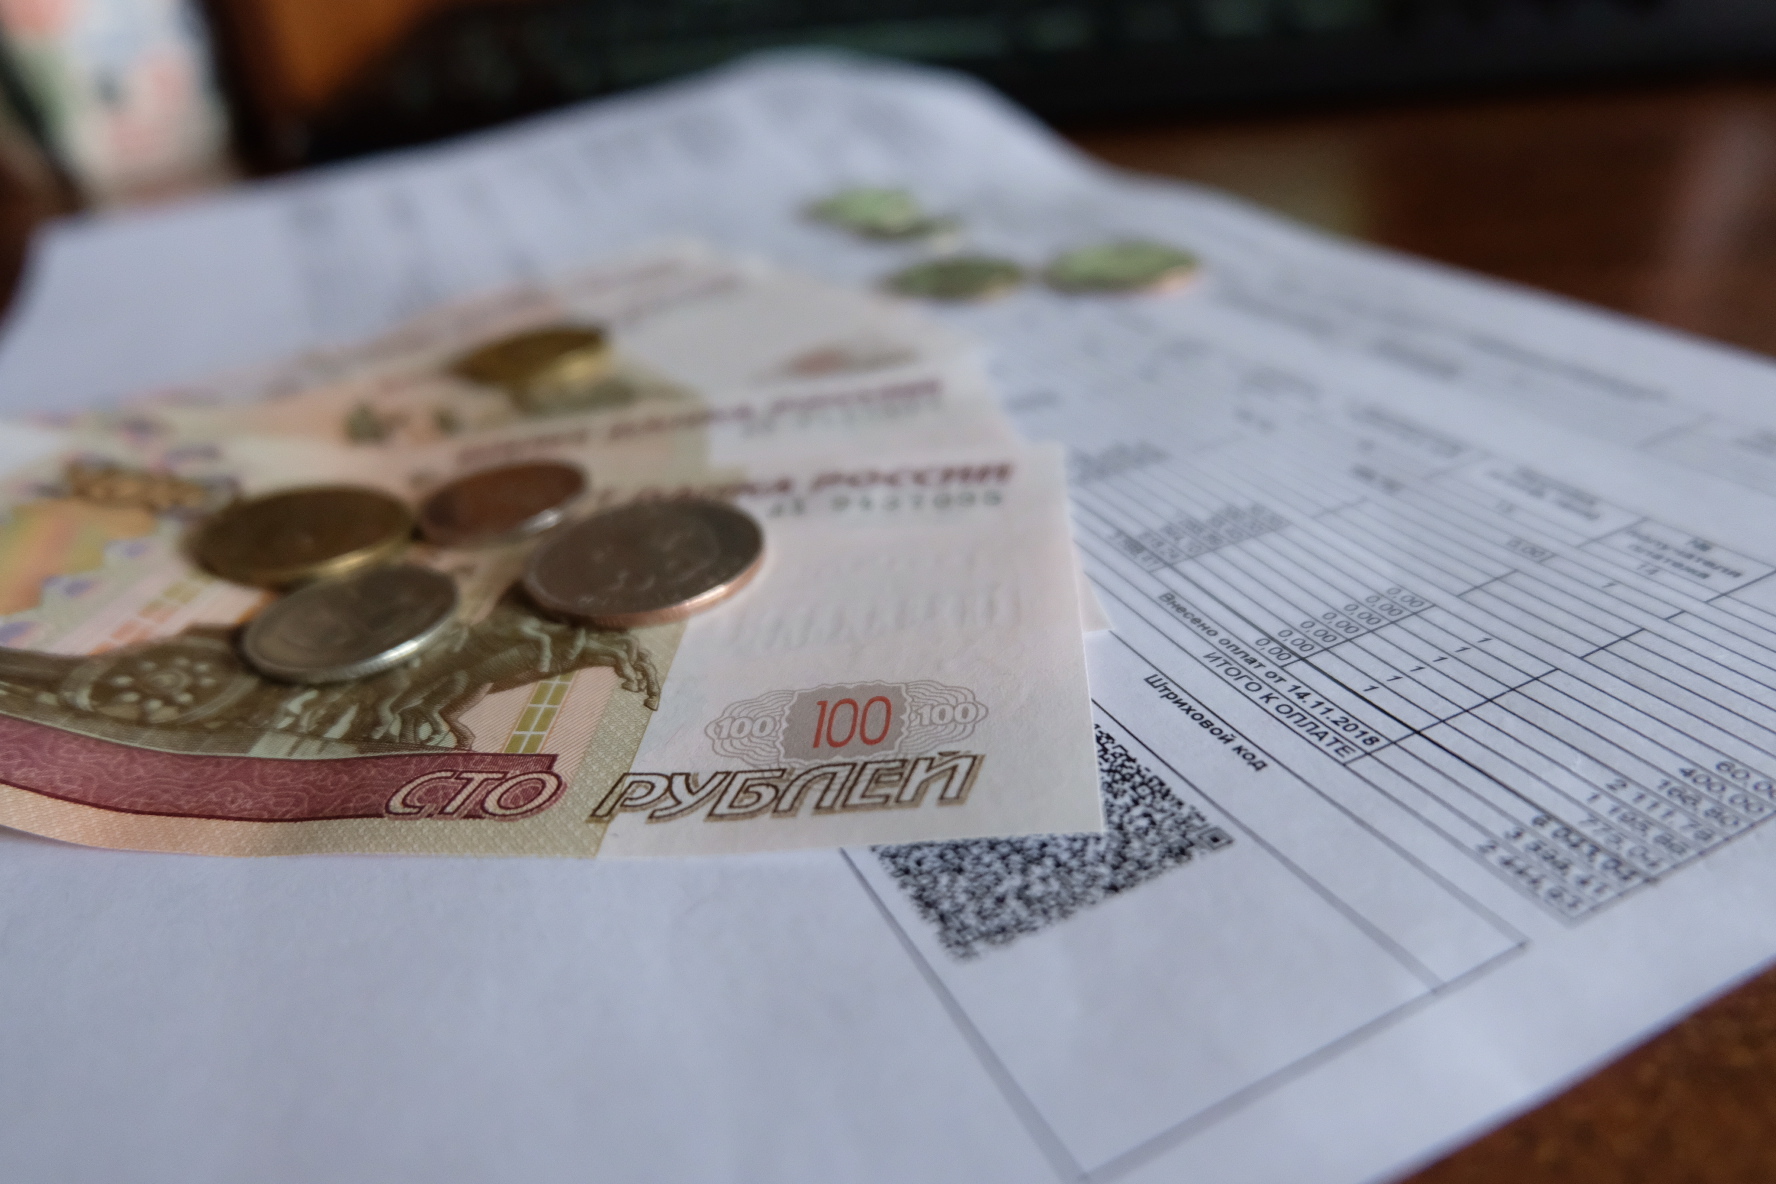 Сотрудники водоканала Владикавказа украли 156 млн по поддельным квитанциям